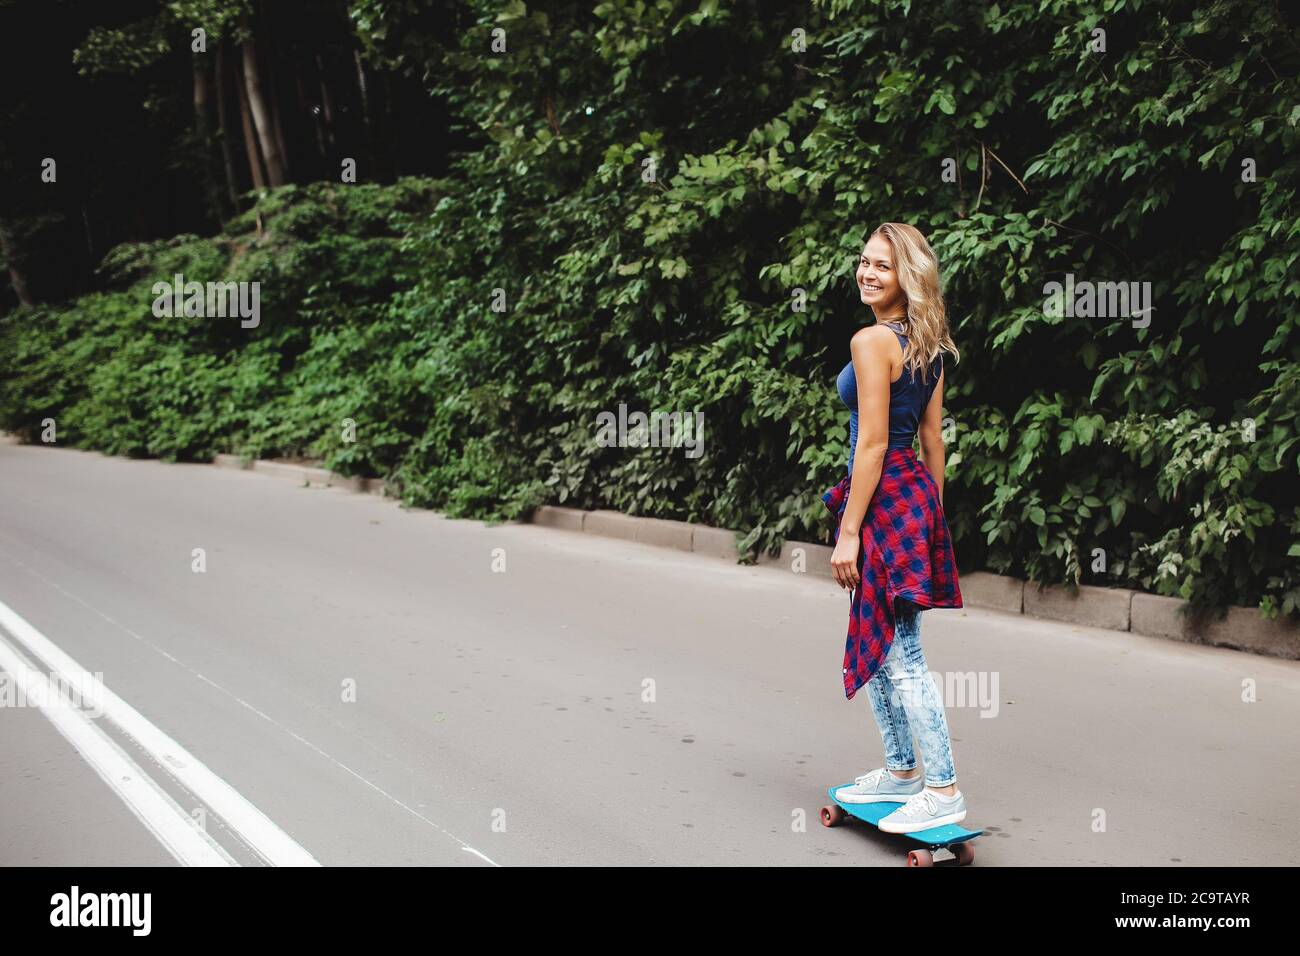 hermoso rubio patina en un parque de la ciudad Foto de stock